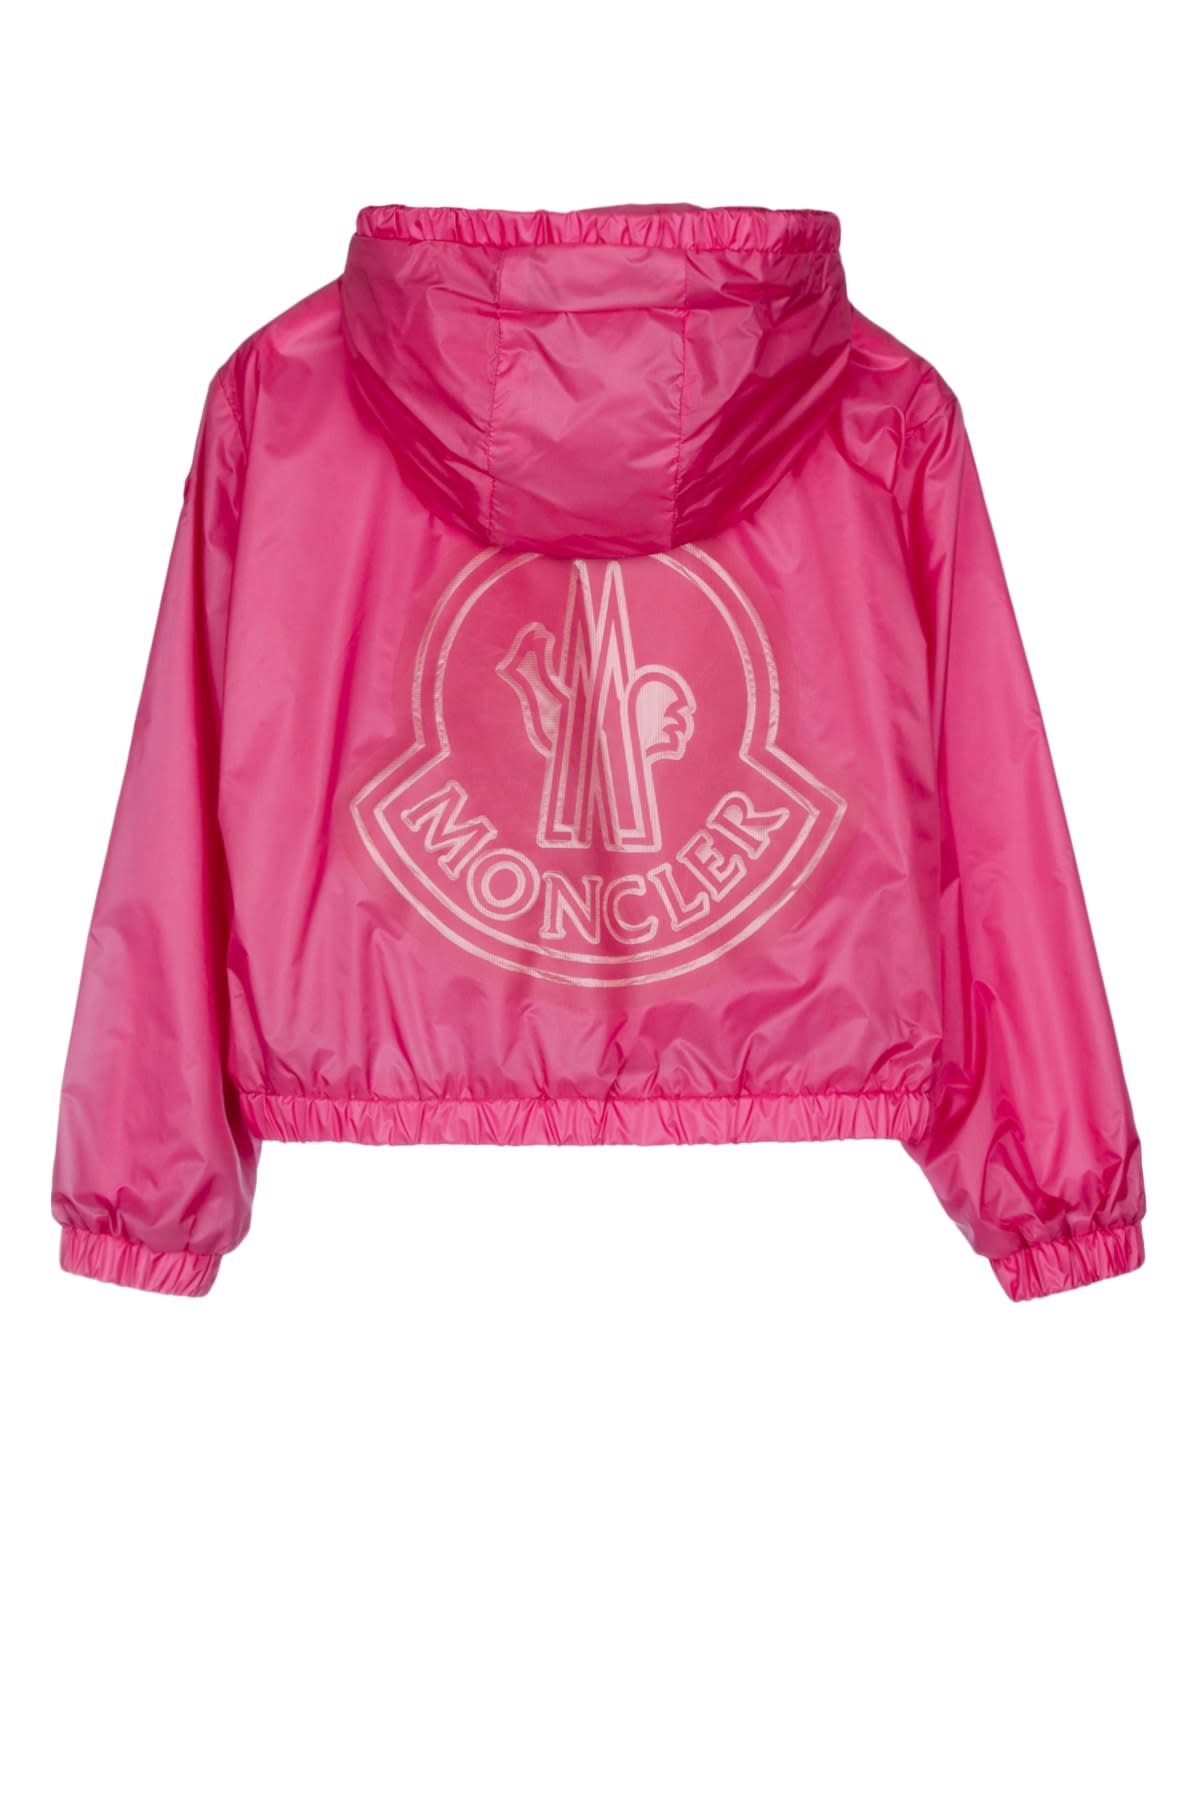 Moncler Kids' Terbish Jacket In Pink